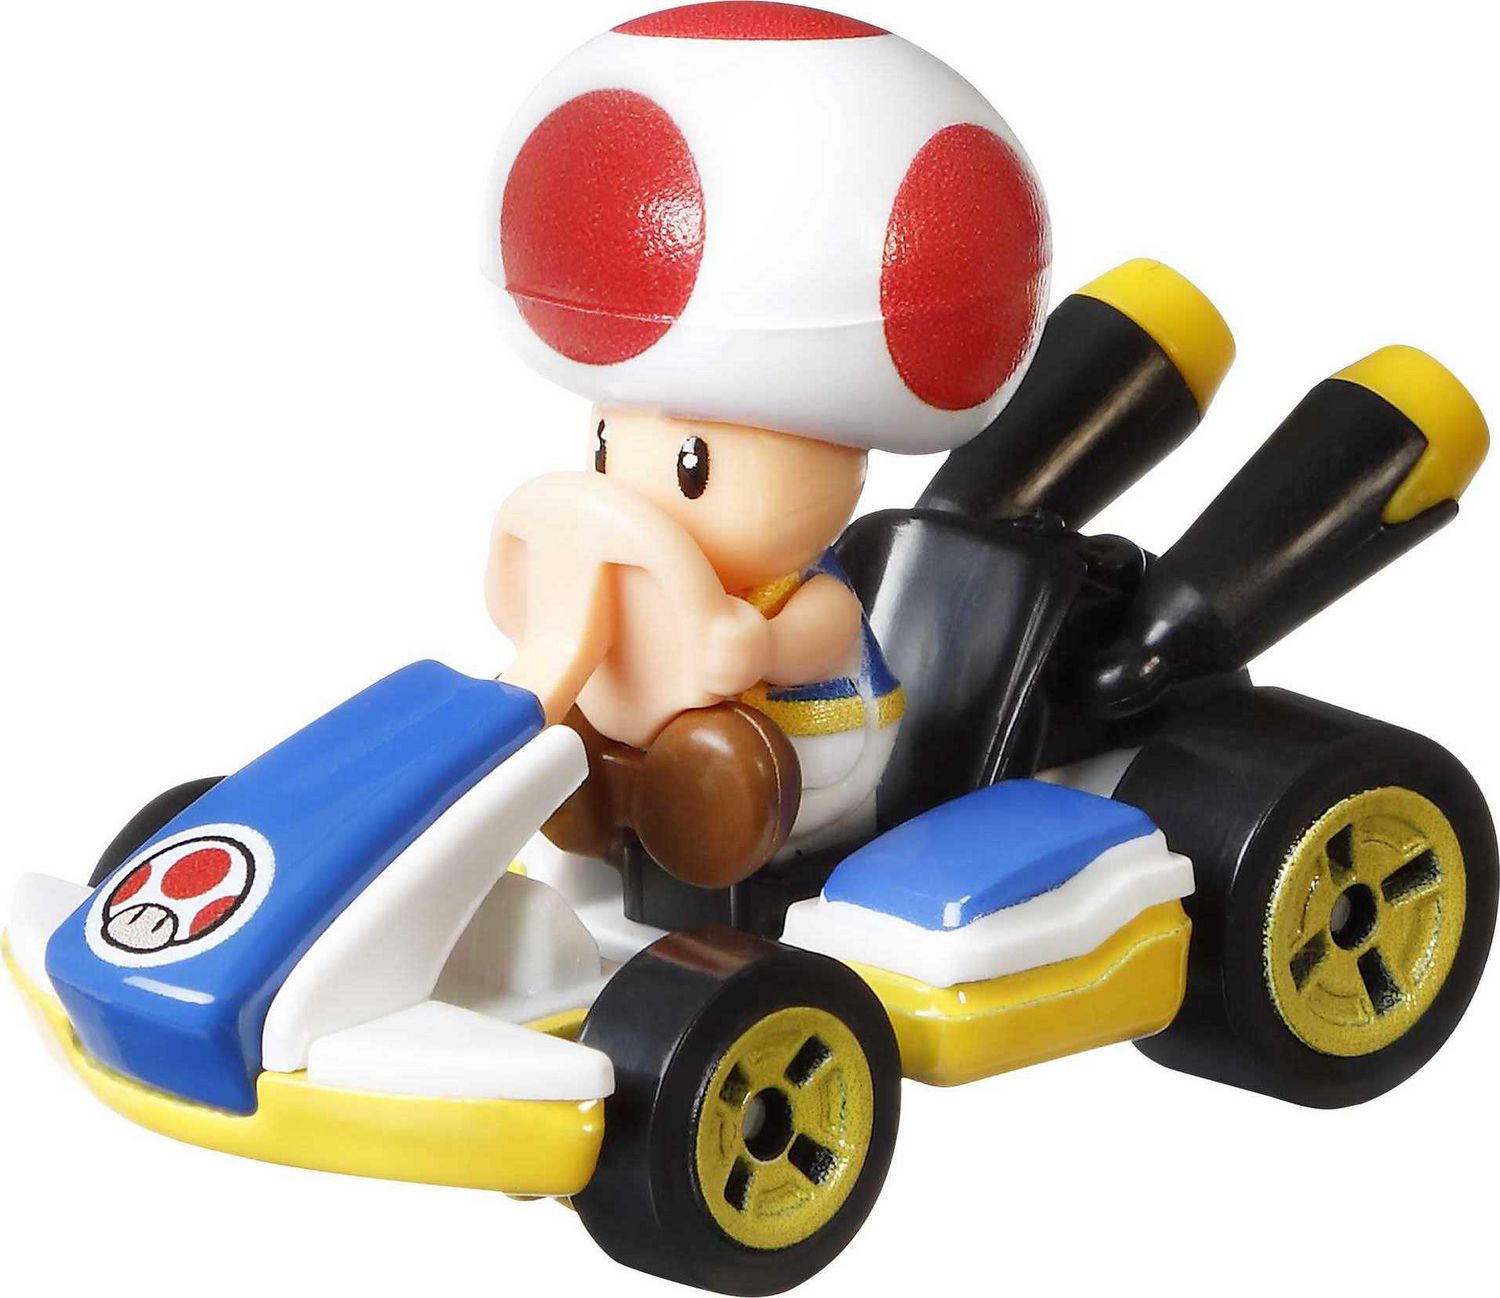 Hot Wheels Mario Kart Toad Standard Kart 164 Scale Die Cast Vehicle Walmart Canada 6707